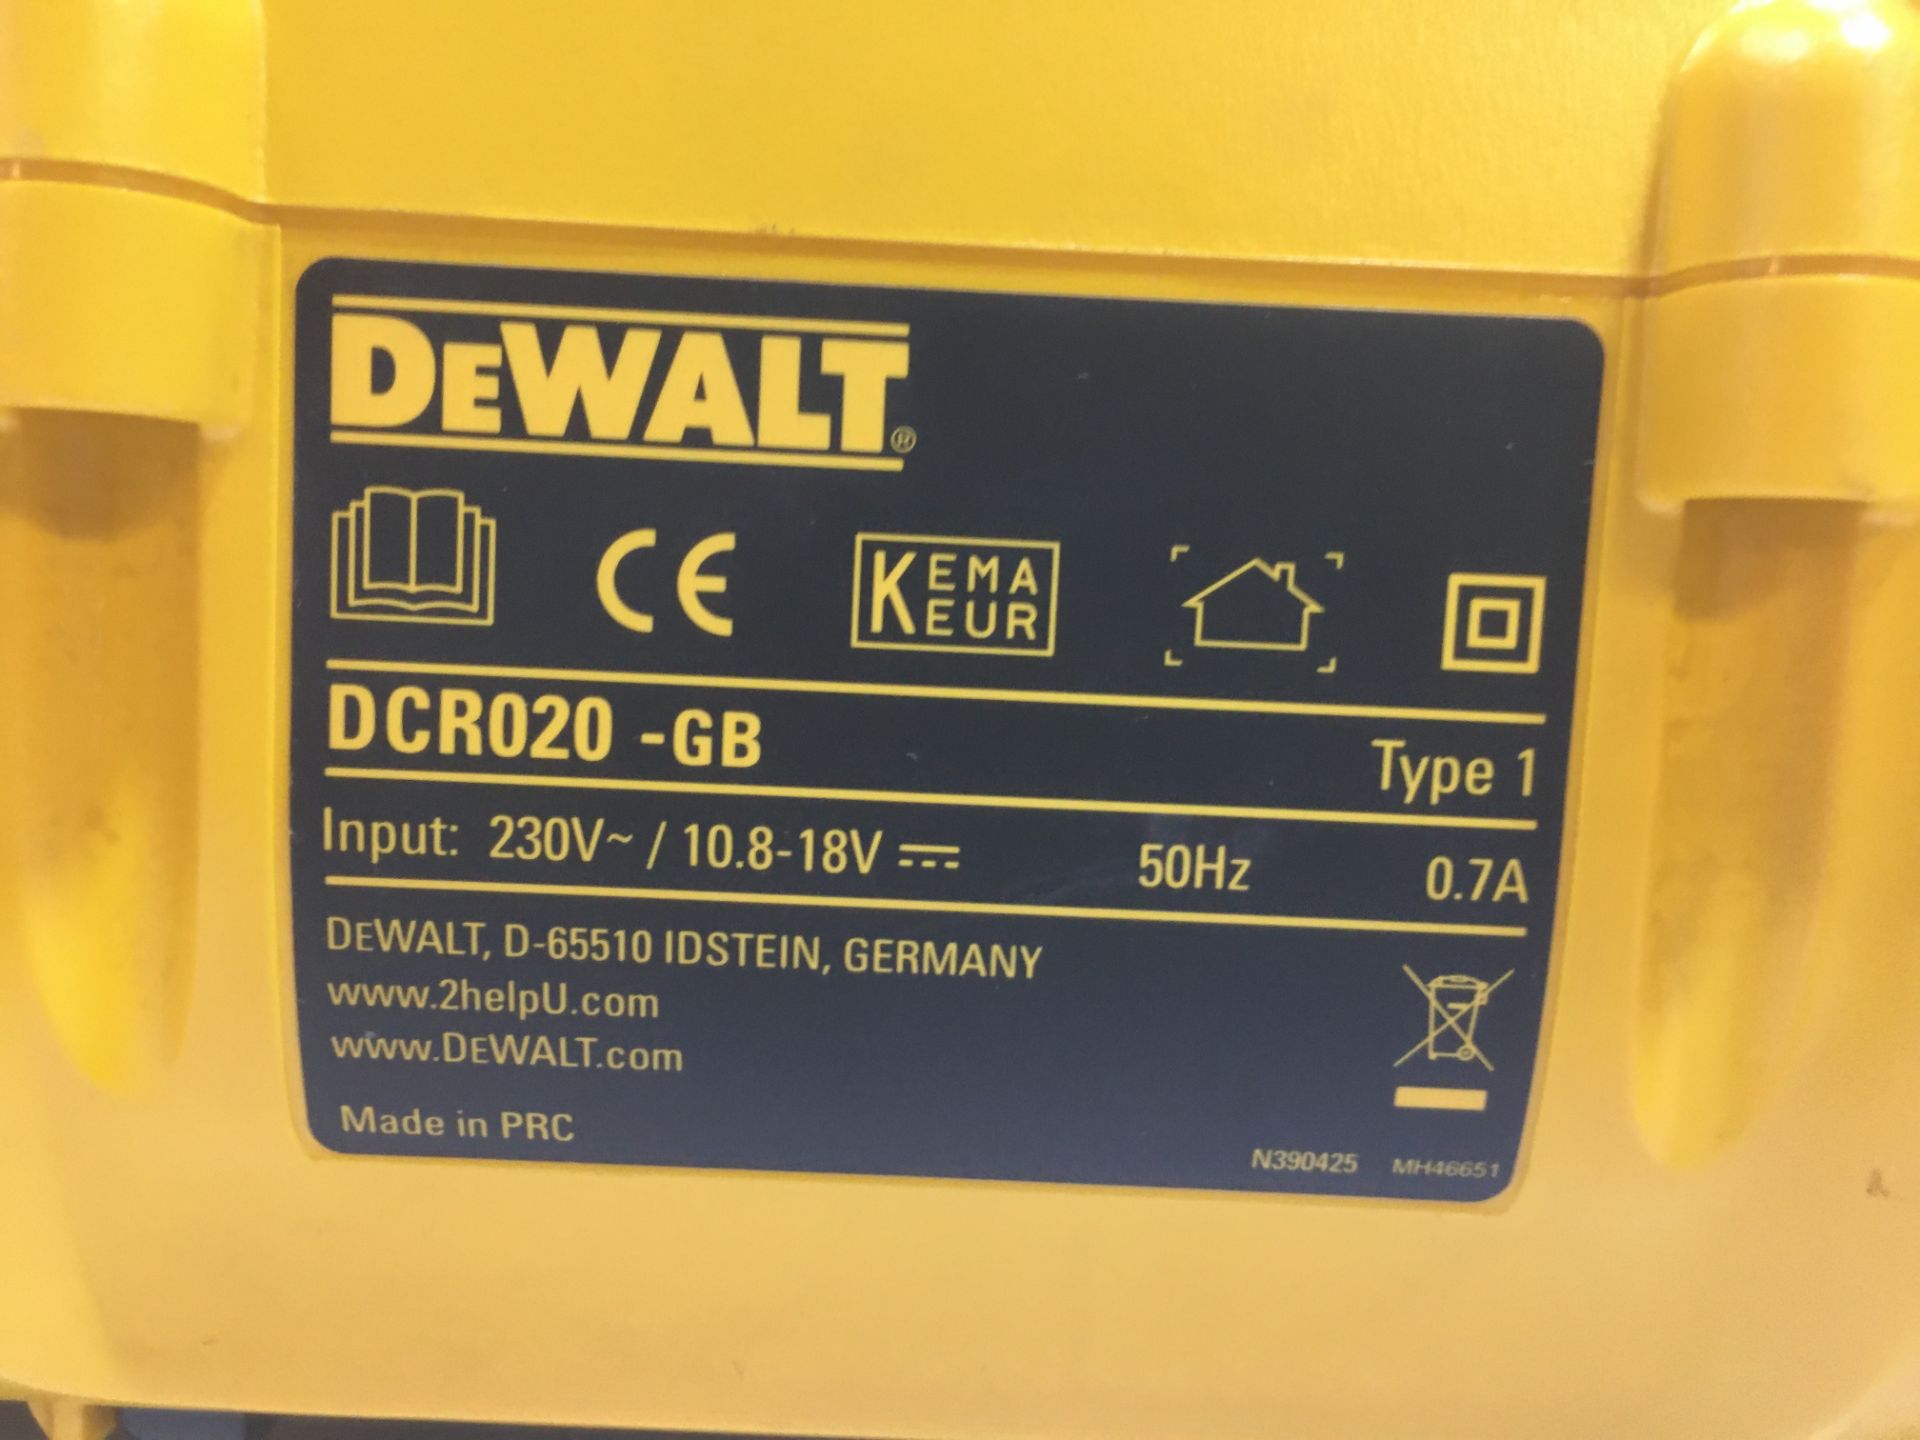 DeWALT DCR020-GB 230V~/10.8-18V Battery Site Radio - Image 6 of 6